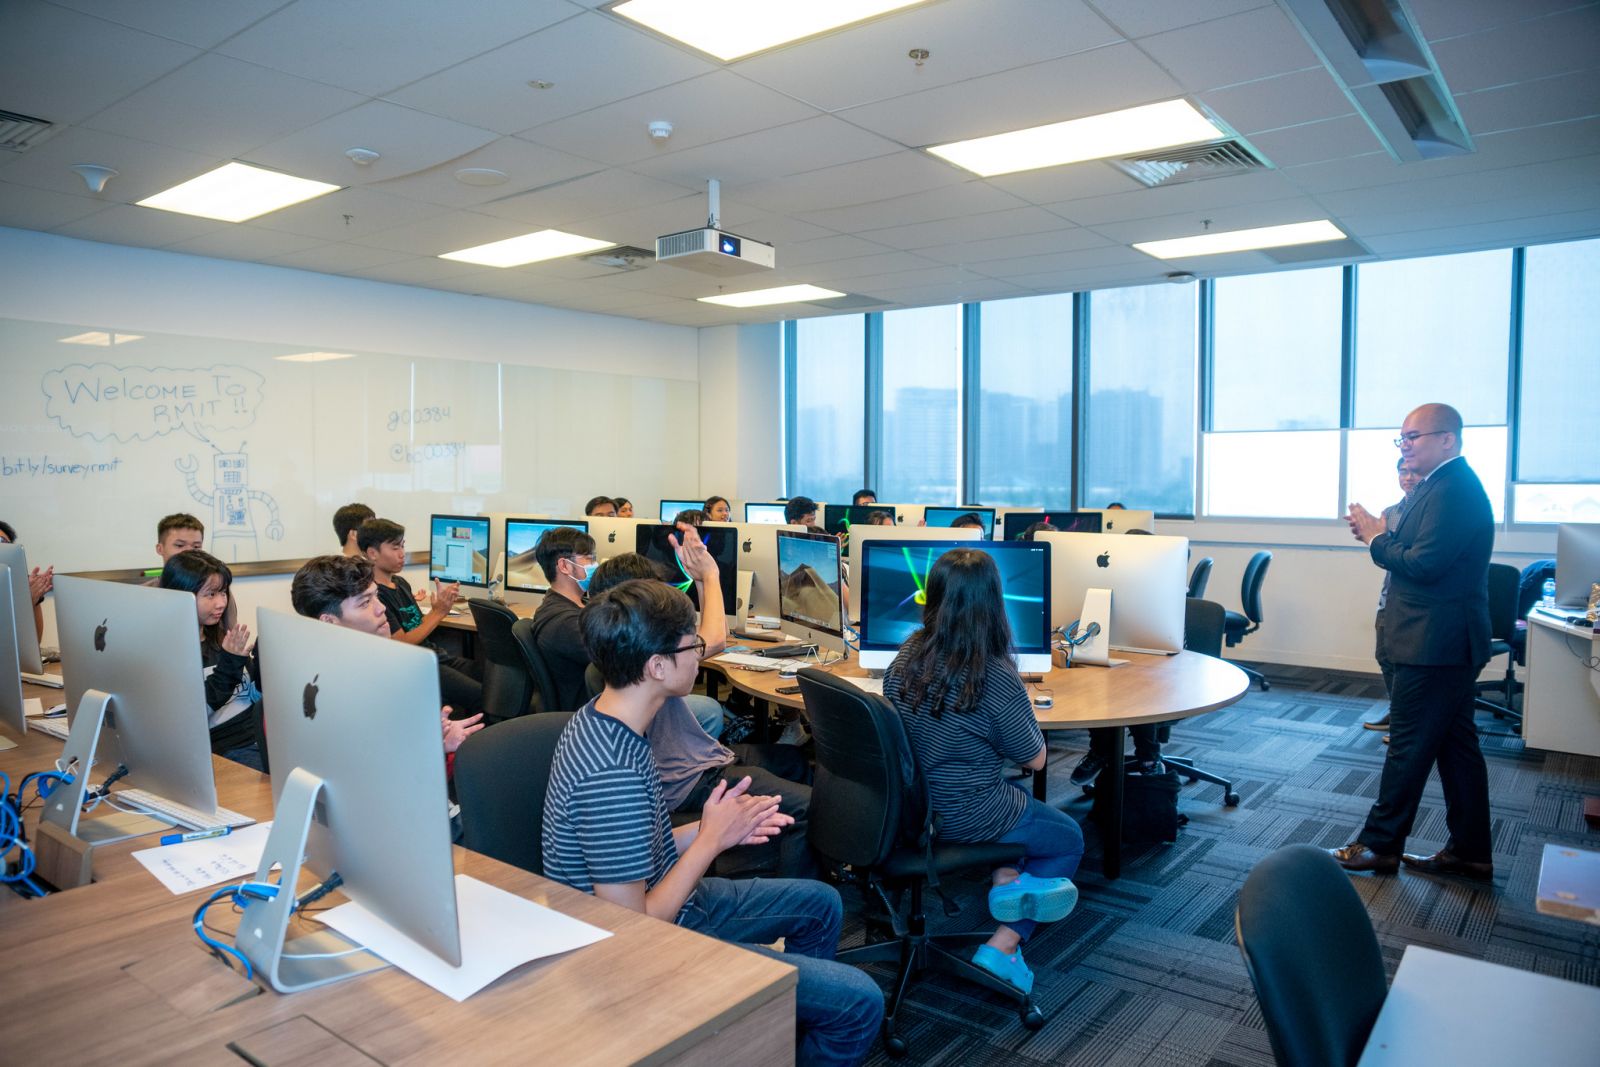 Đại học RMIT và Học viện AWS sẽ giảng dạy bốn môn học về điện toán đám mây tại các cơ sở của RMIT tại Úc và Việt Nam.